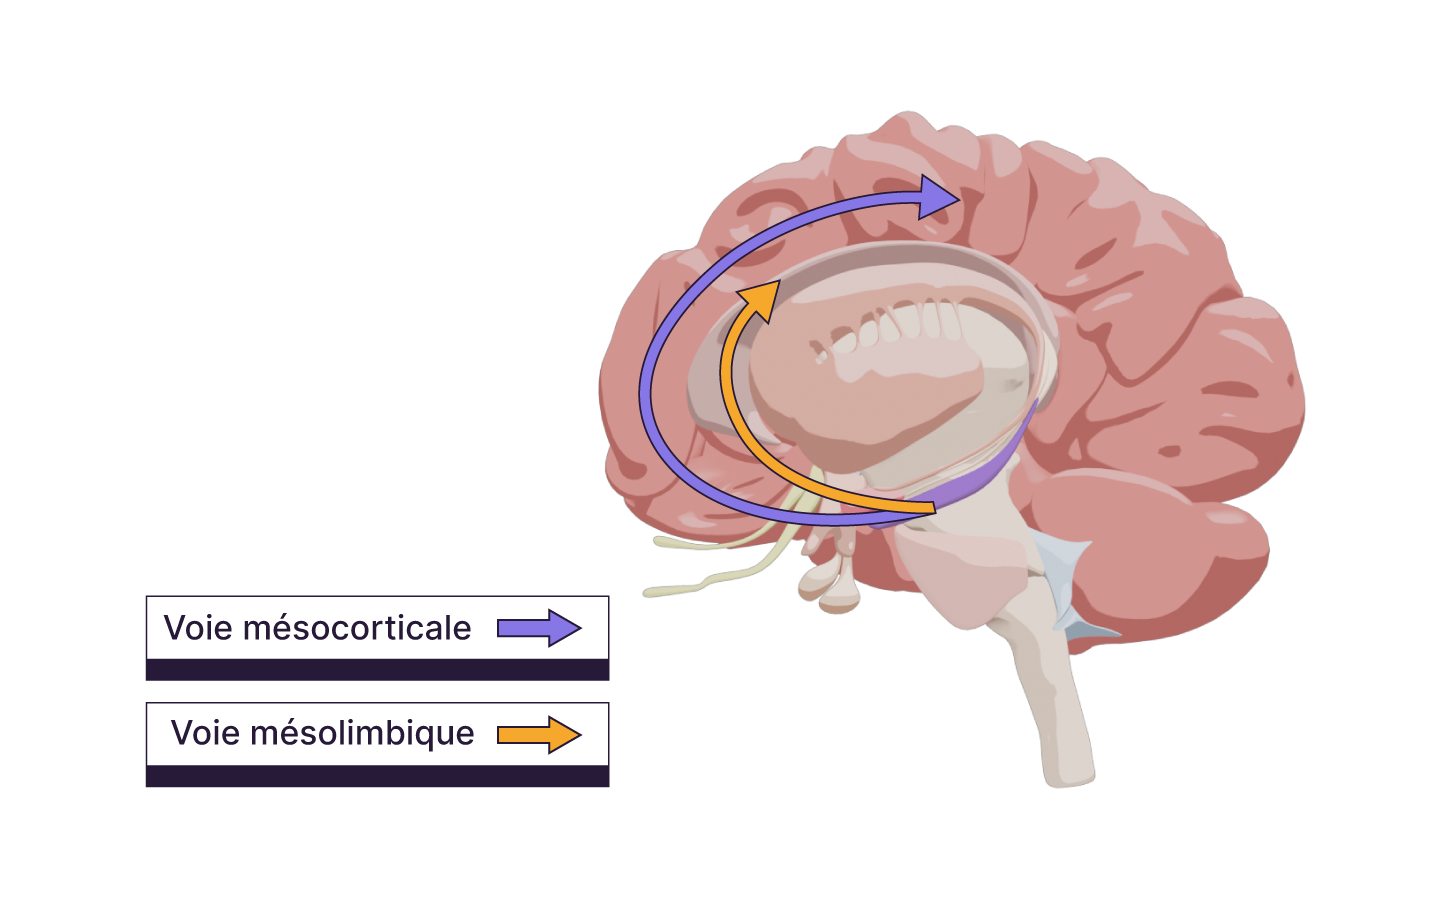 Graphique d'une coupe de cerveau représentant les voies mésocorticale et mésolimbique.